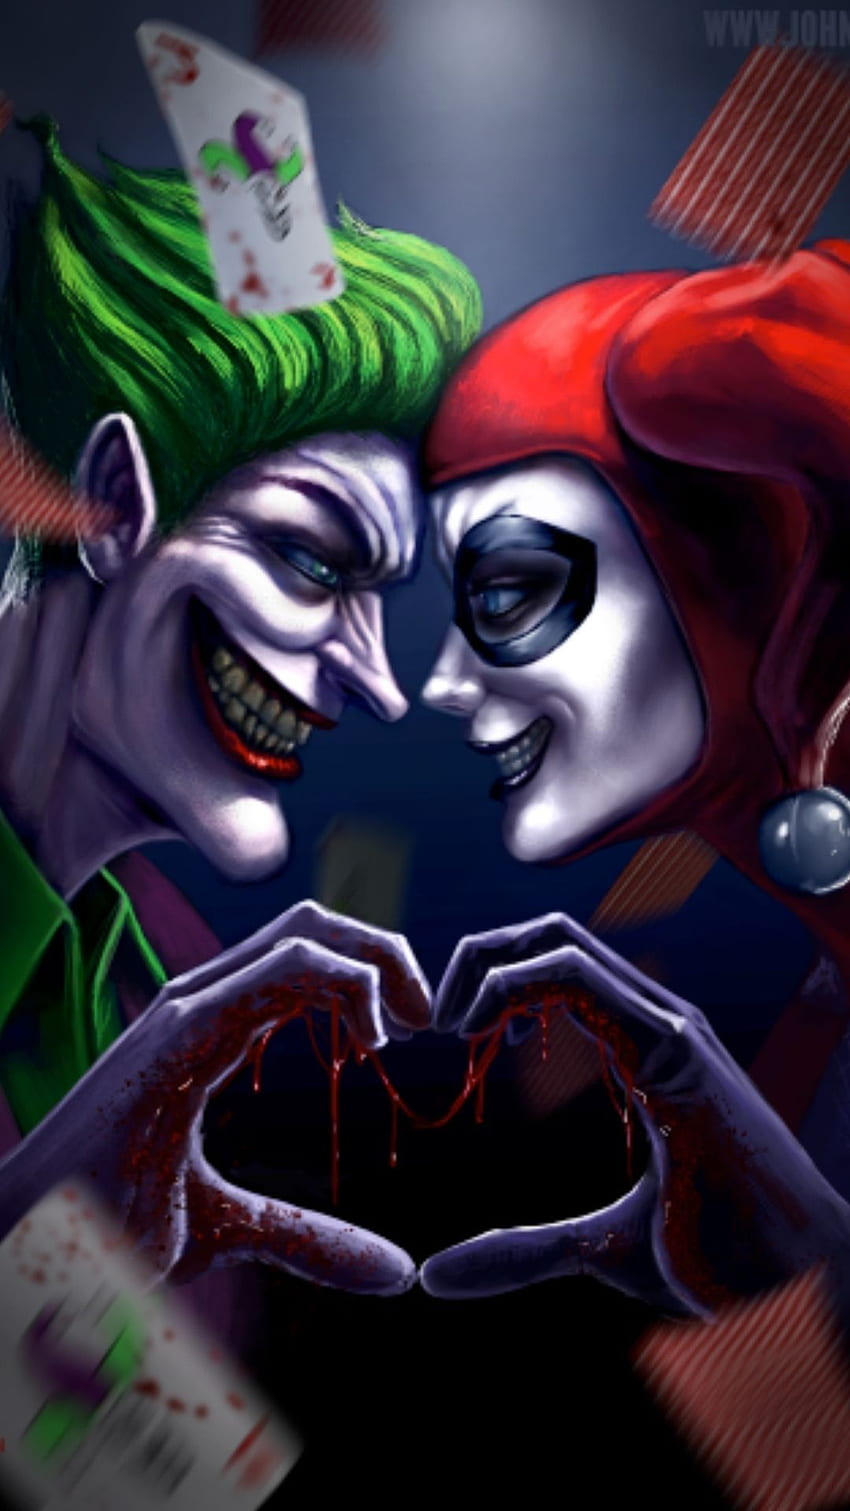 The Joker iPhone - Best The Joker iPhone, Crazy Love Joker and Harley Quinn HD phone wallpaper